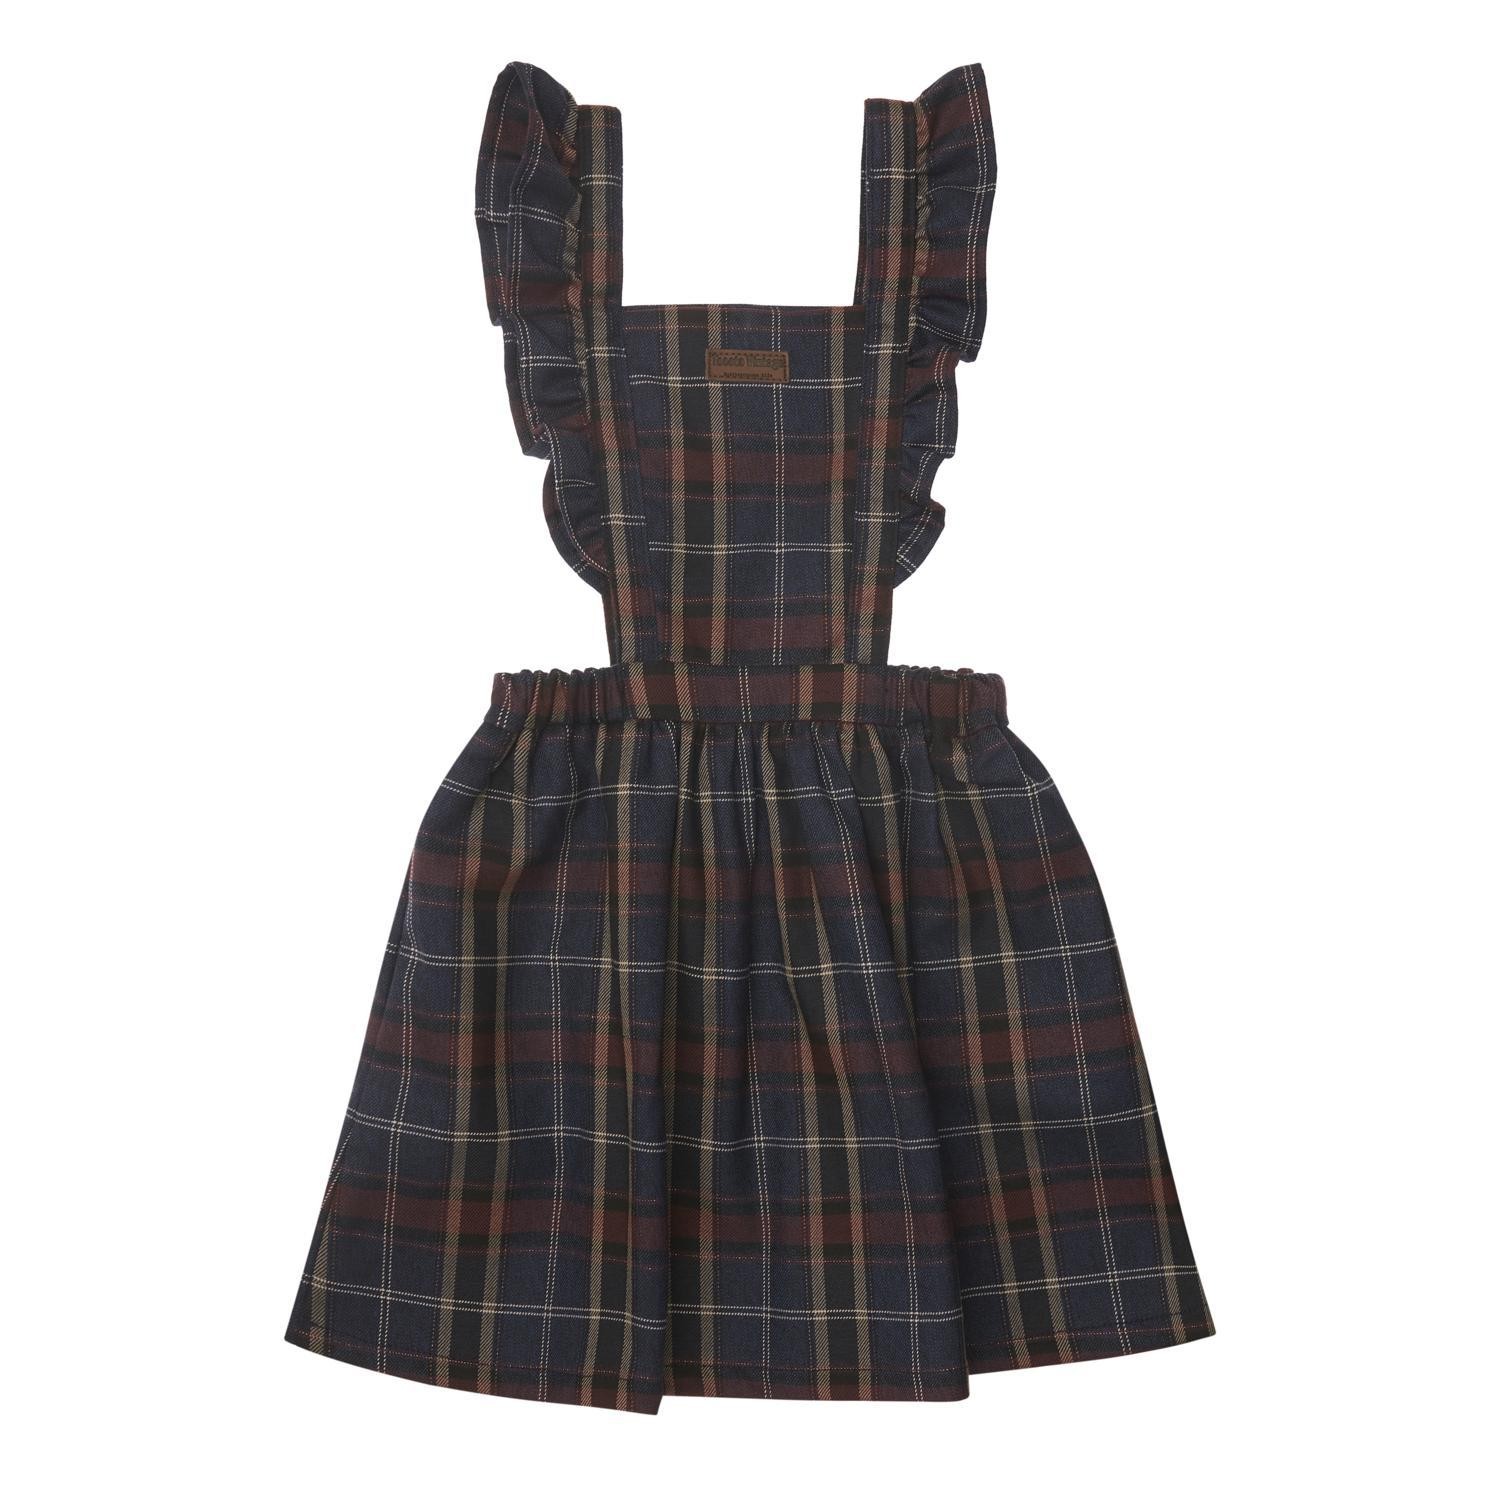 Checkered pinafore dress 1